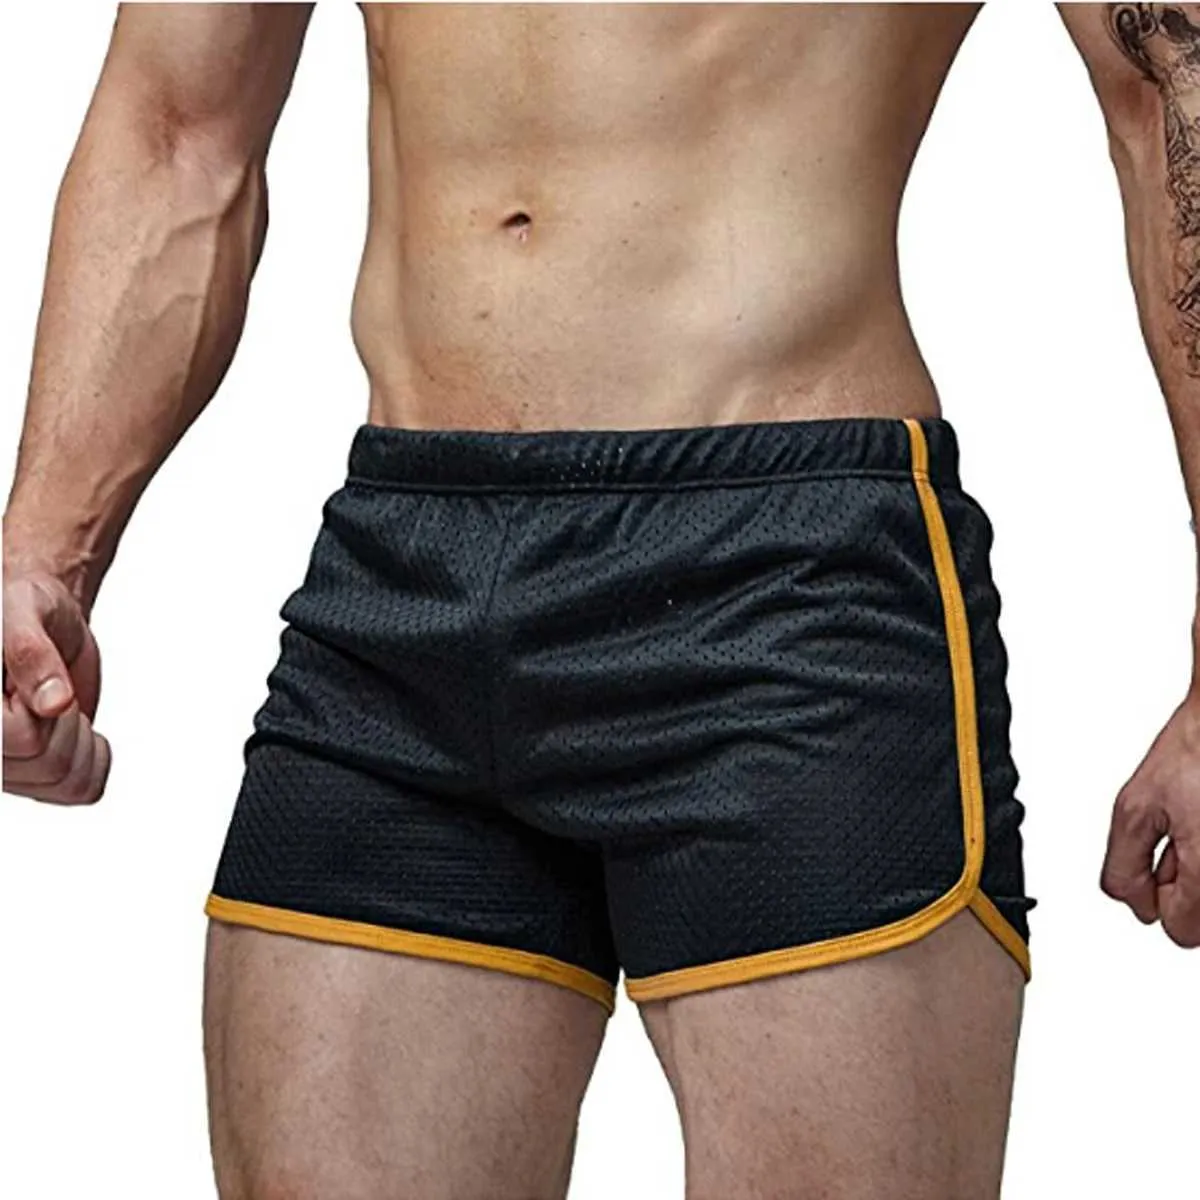 Underbyxor helt nya mäns korta snabba torra shorts strandkläder träning gym sport kör fitness 2020 casual elastic dragstring mesh shortsl1218